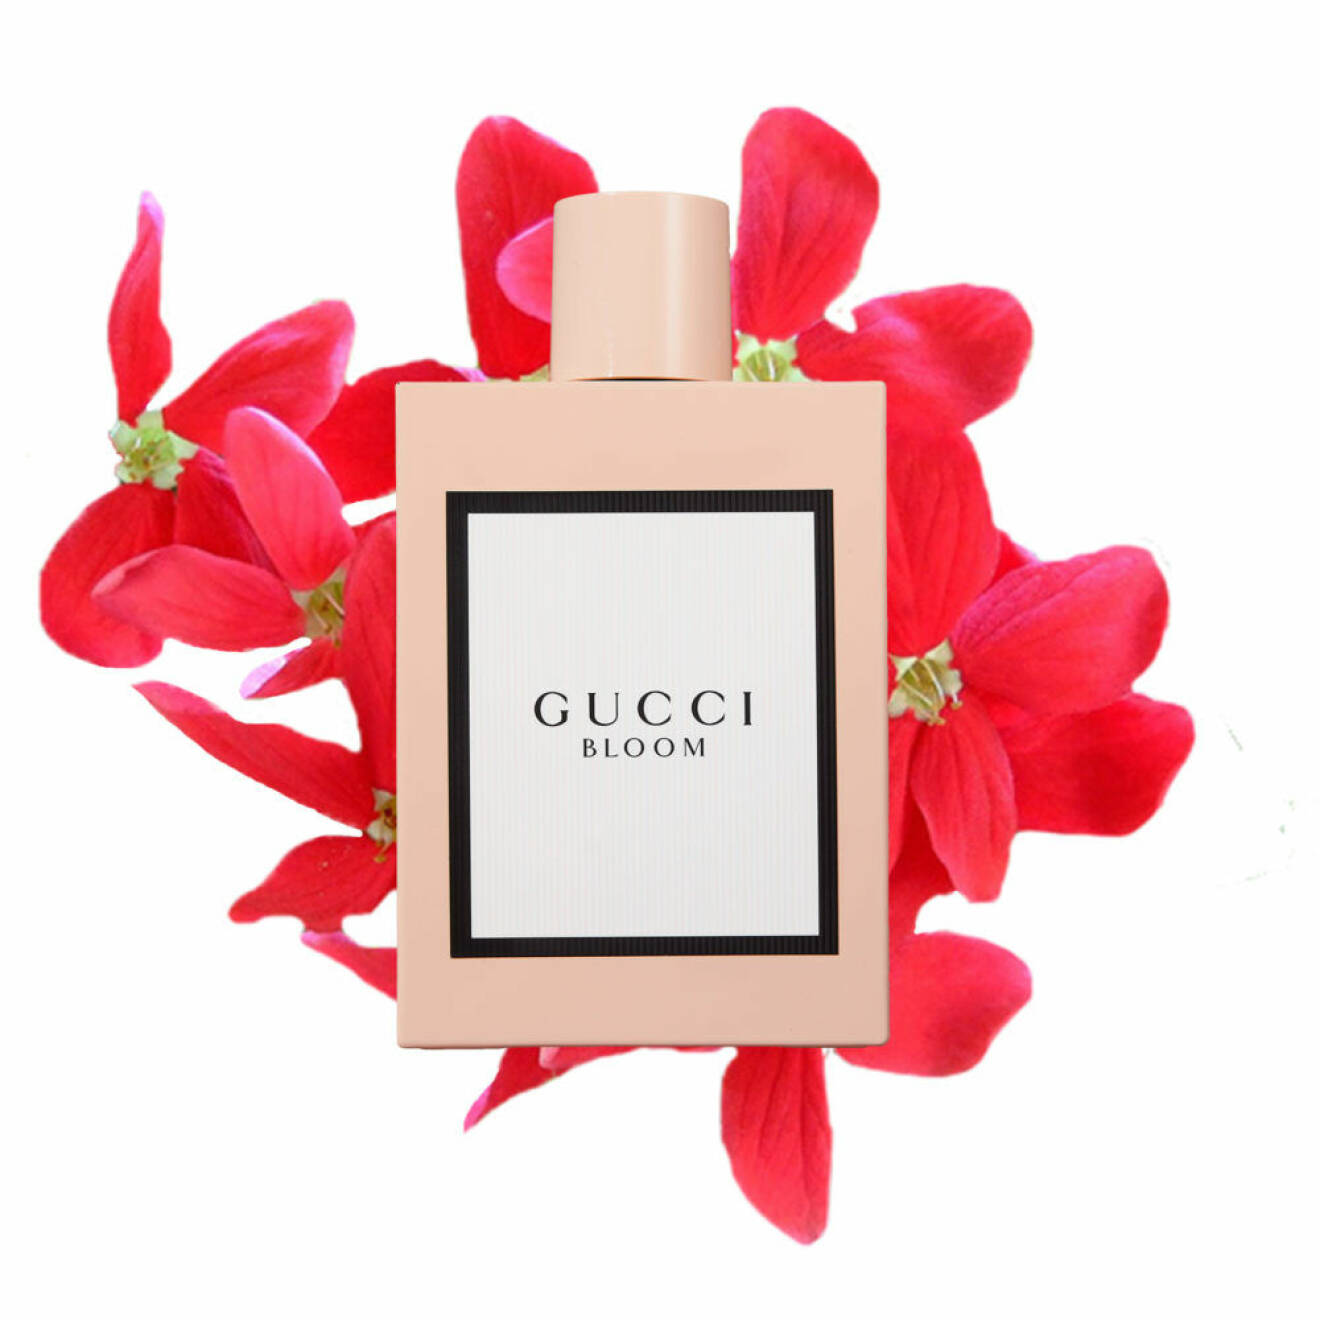 Bloom från Gucci.